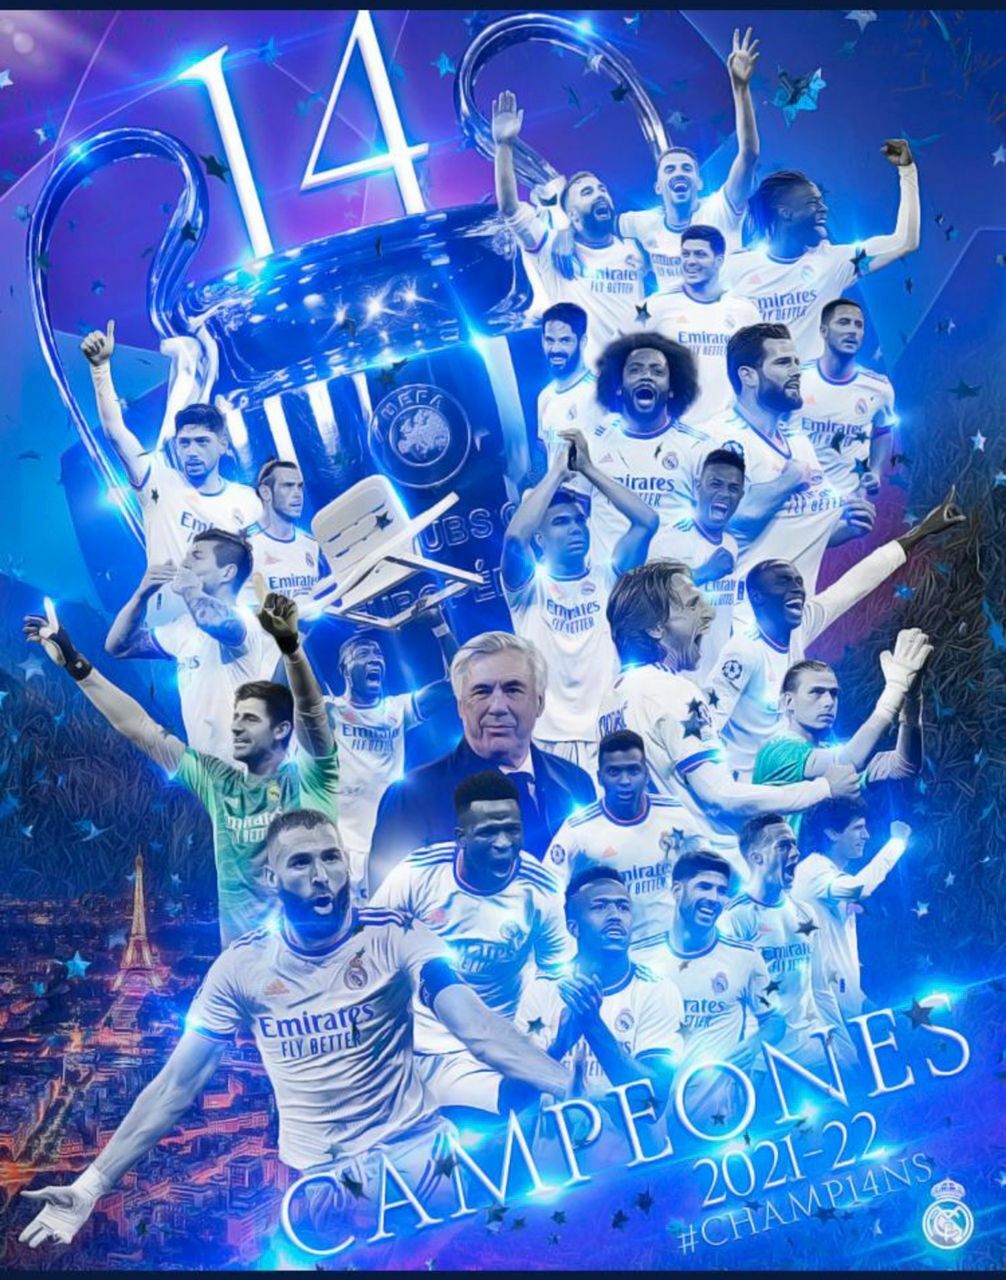 El Madrid campeón